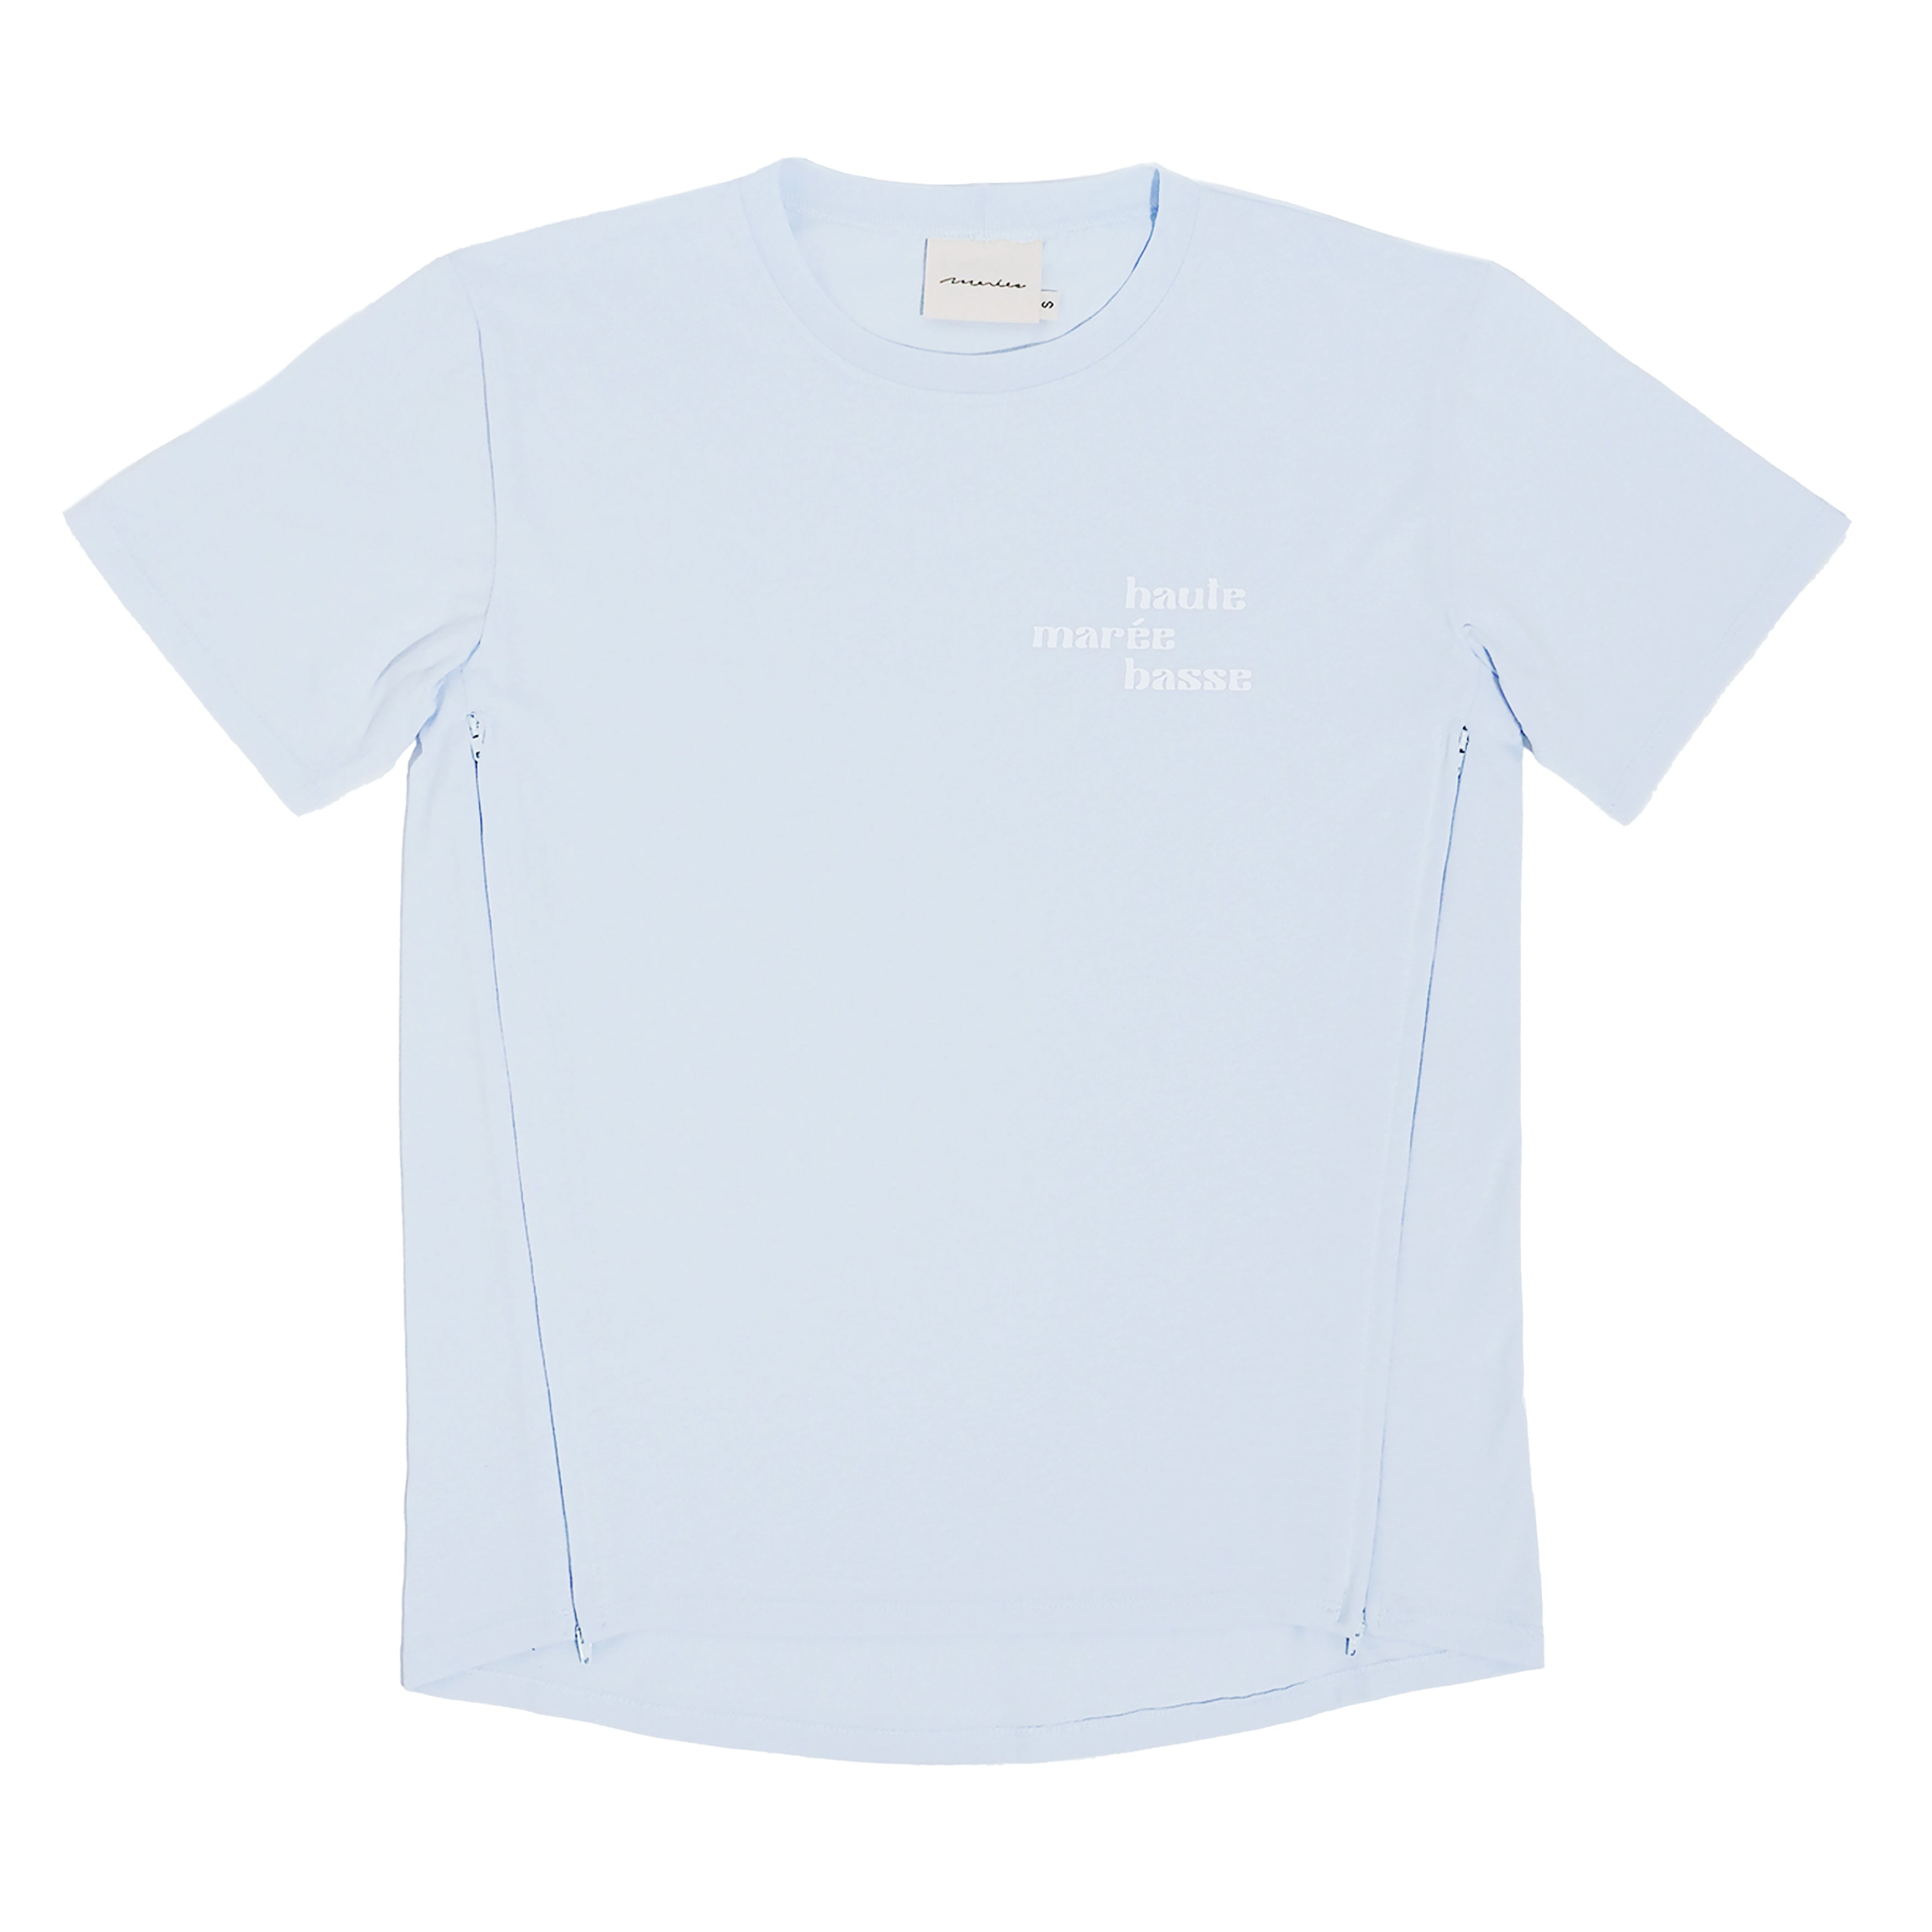 Photo du tee-shirt d'allaitement Marée haute marée basse à plat sur fond blanc.